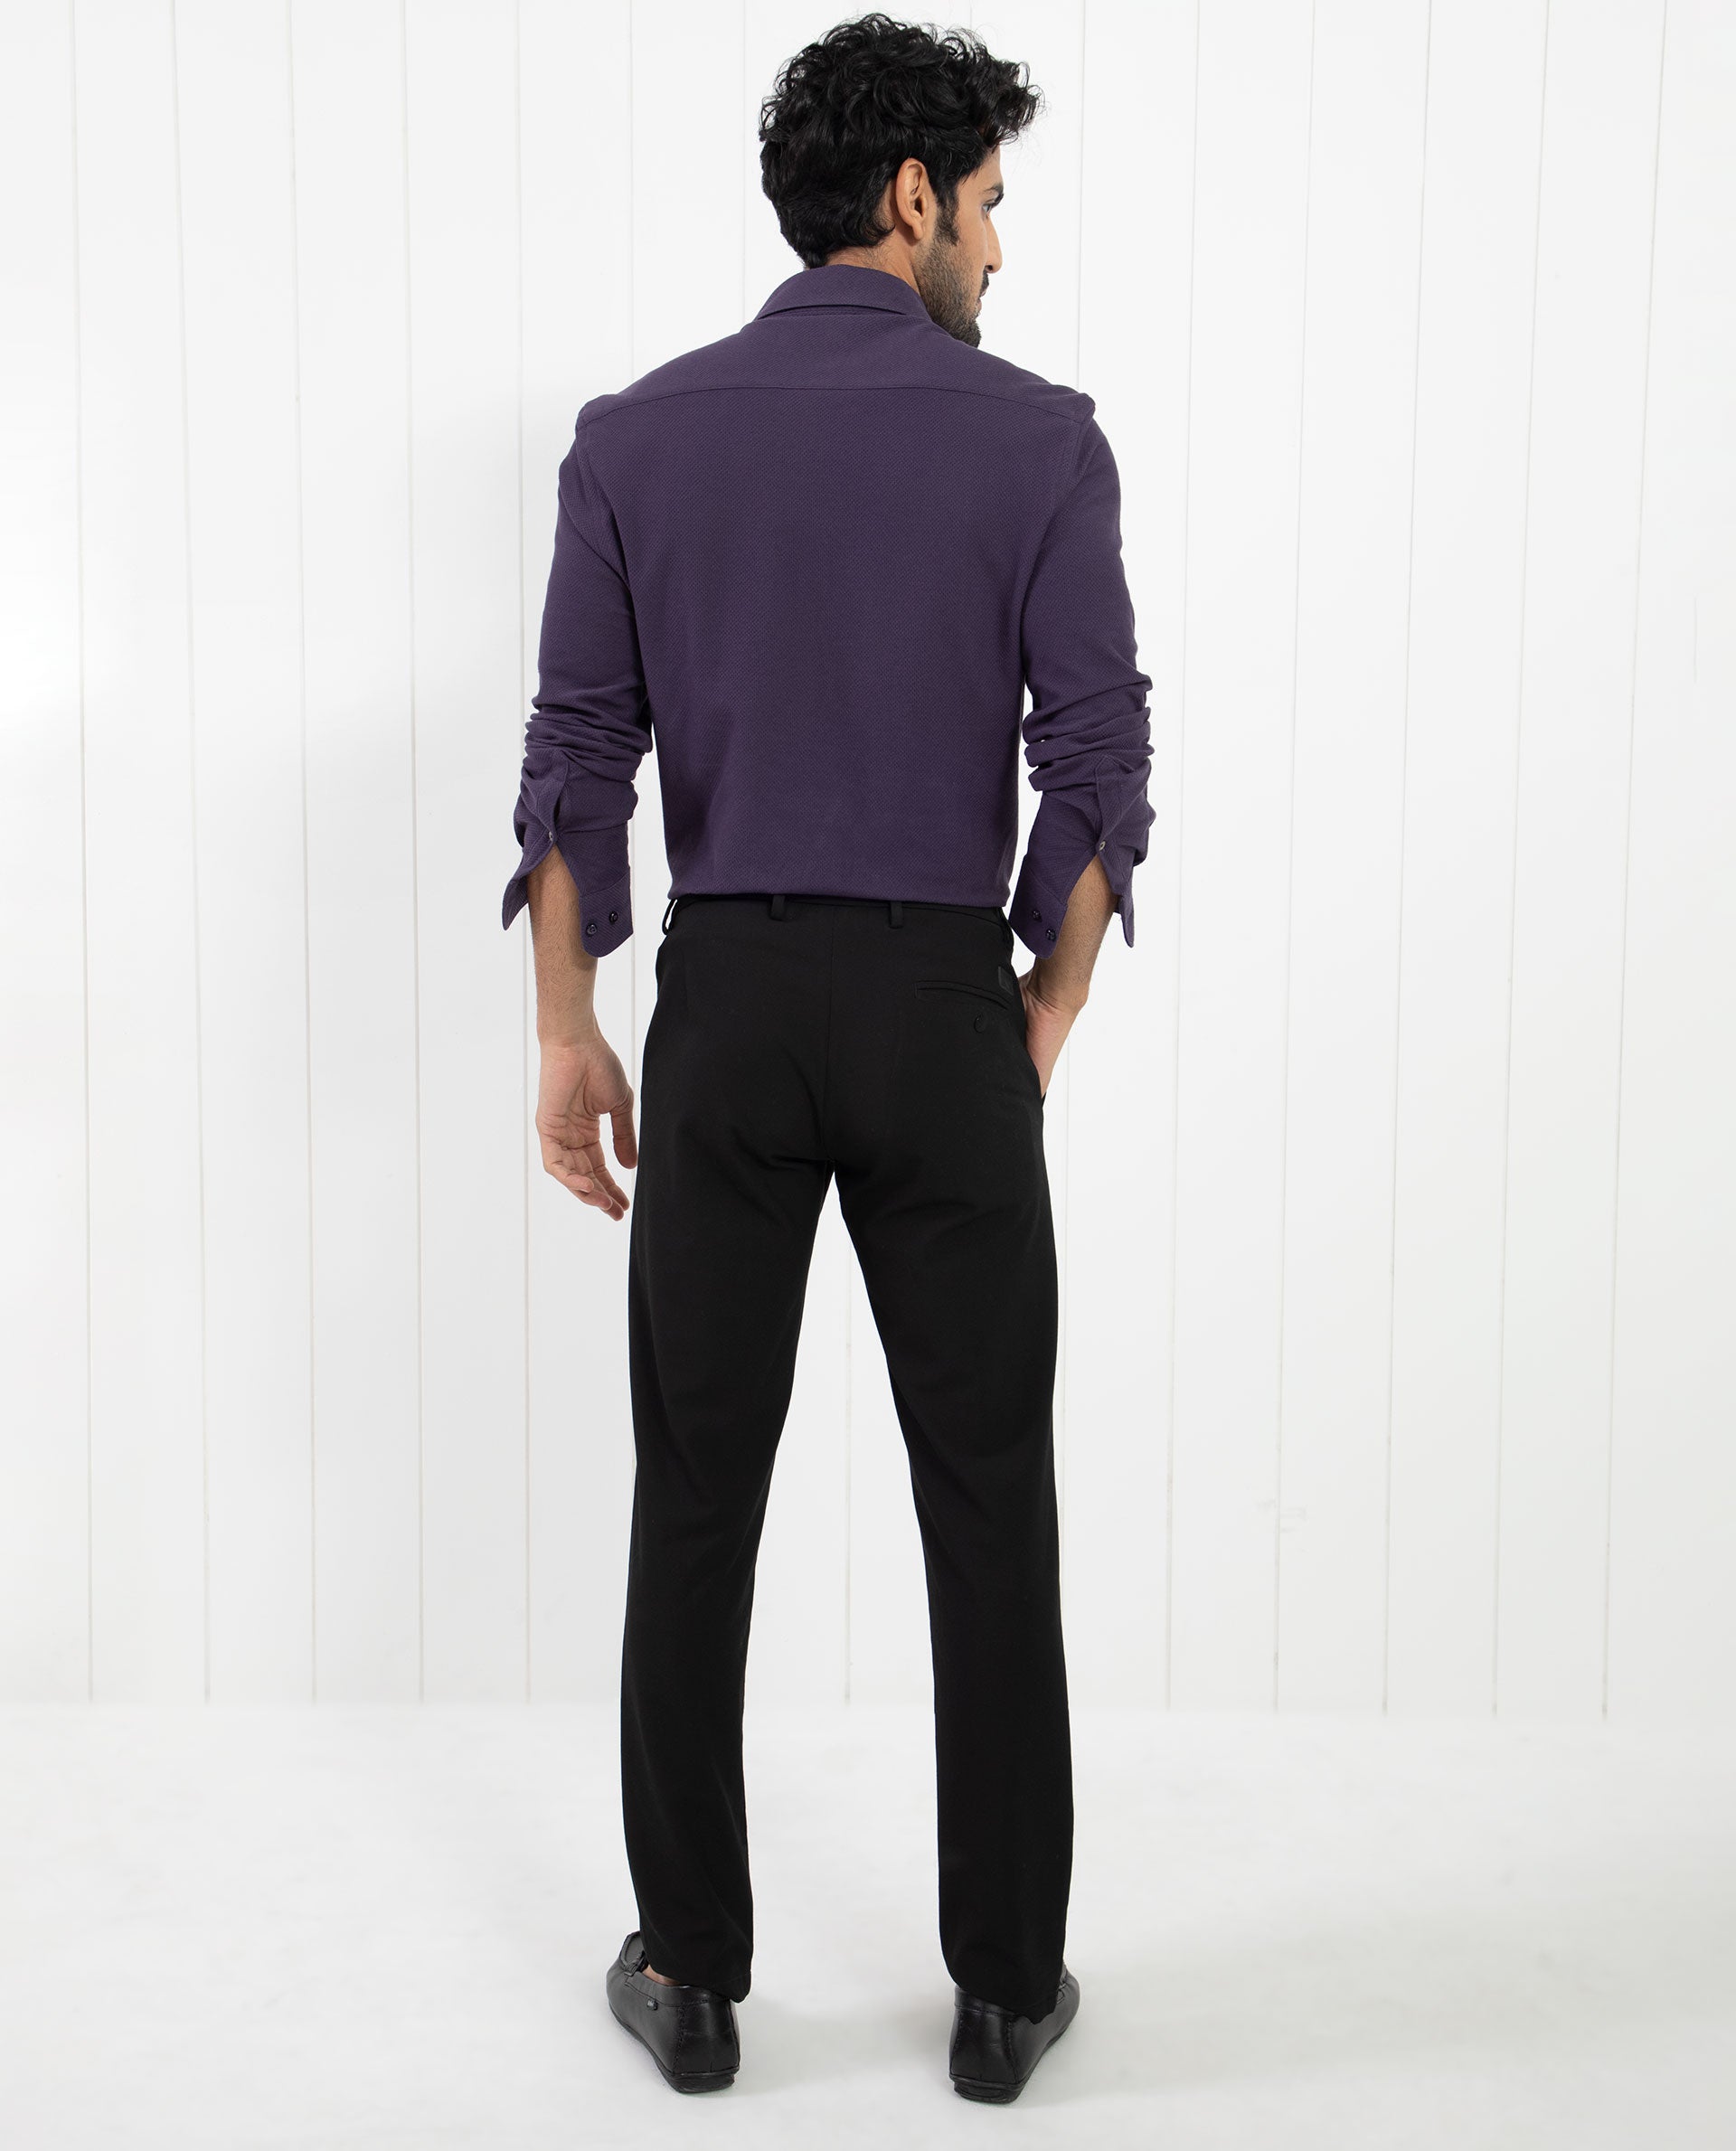 Buy Men Purple Slim Fit Formal Half Sleeves Formal Shirt Online - 565615 |  Peter England